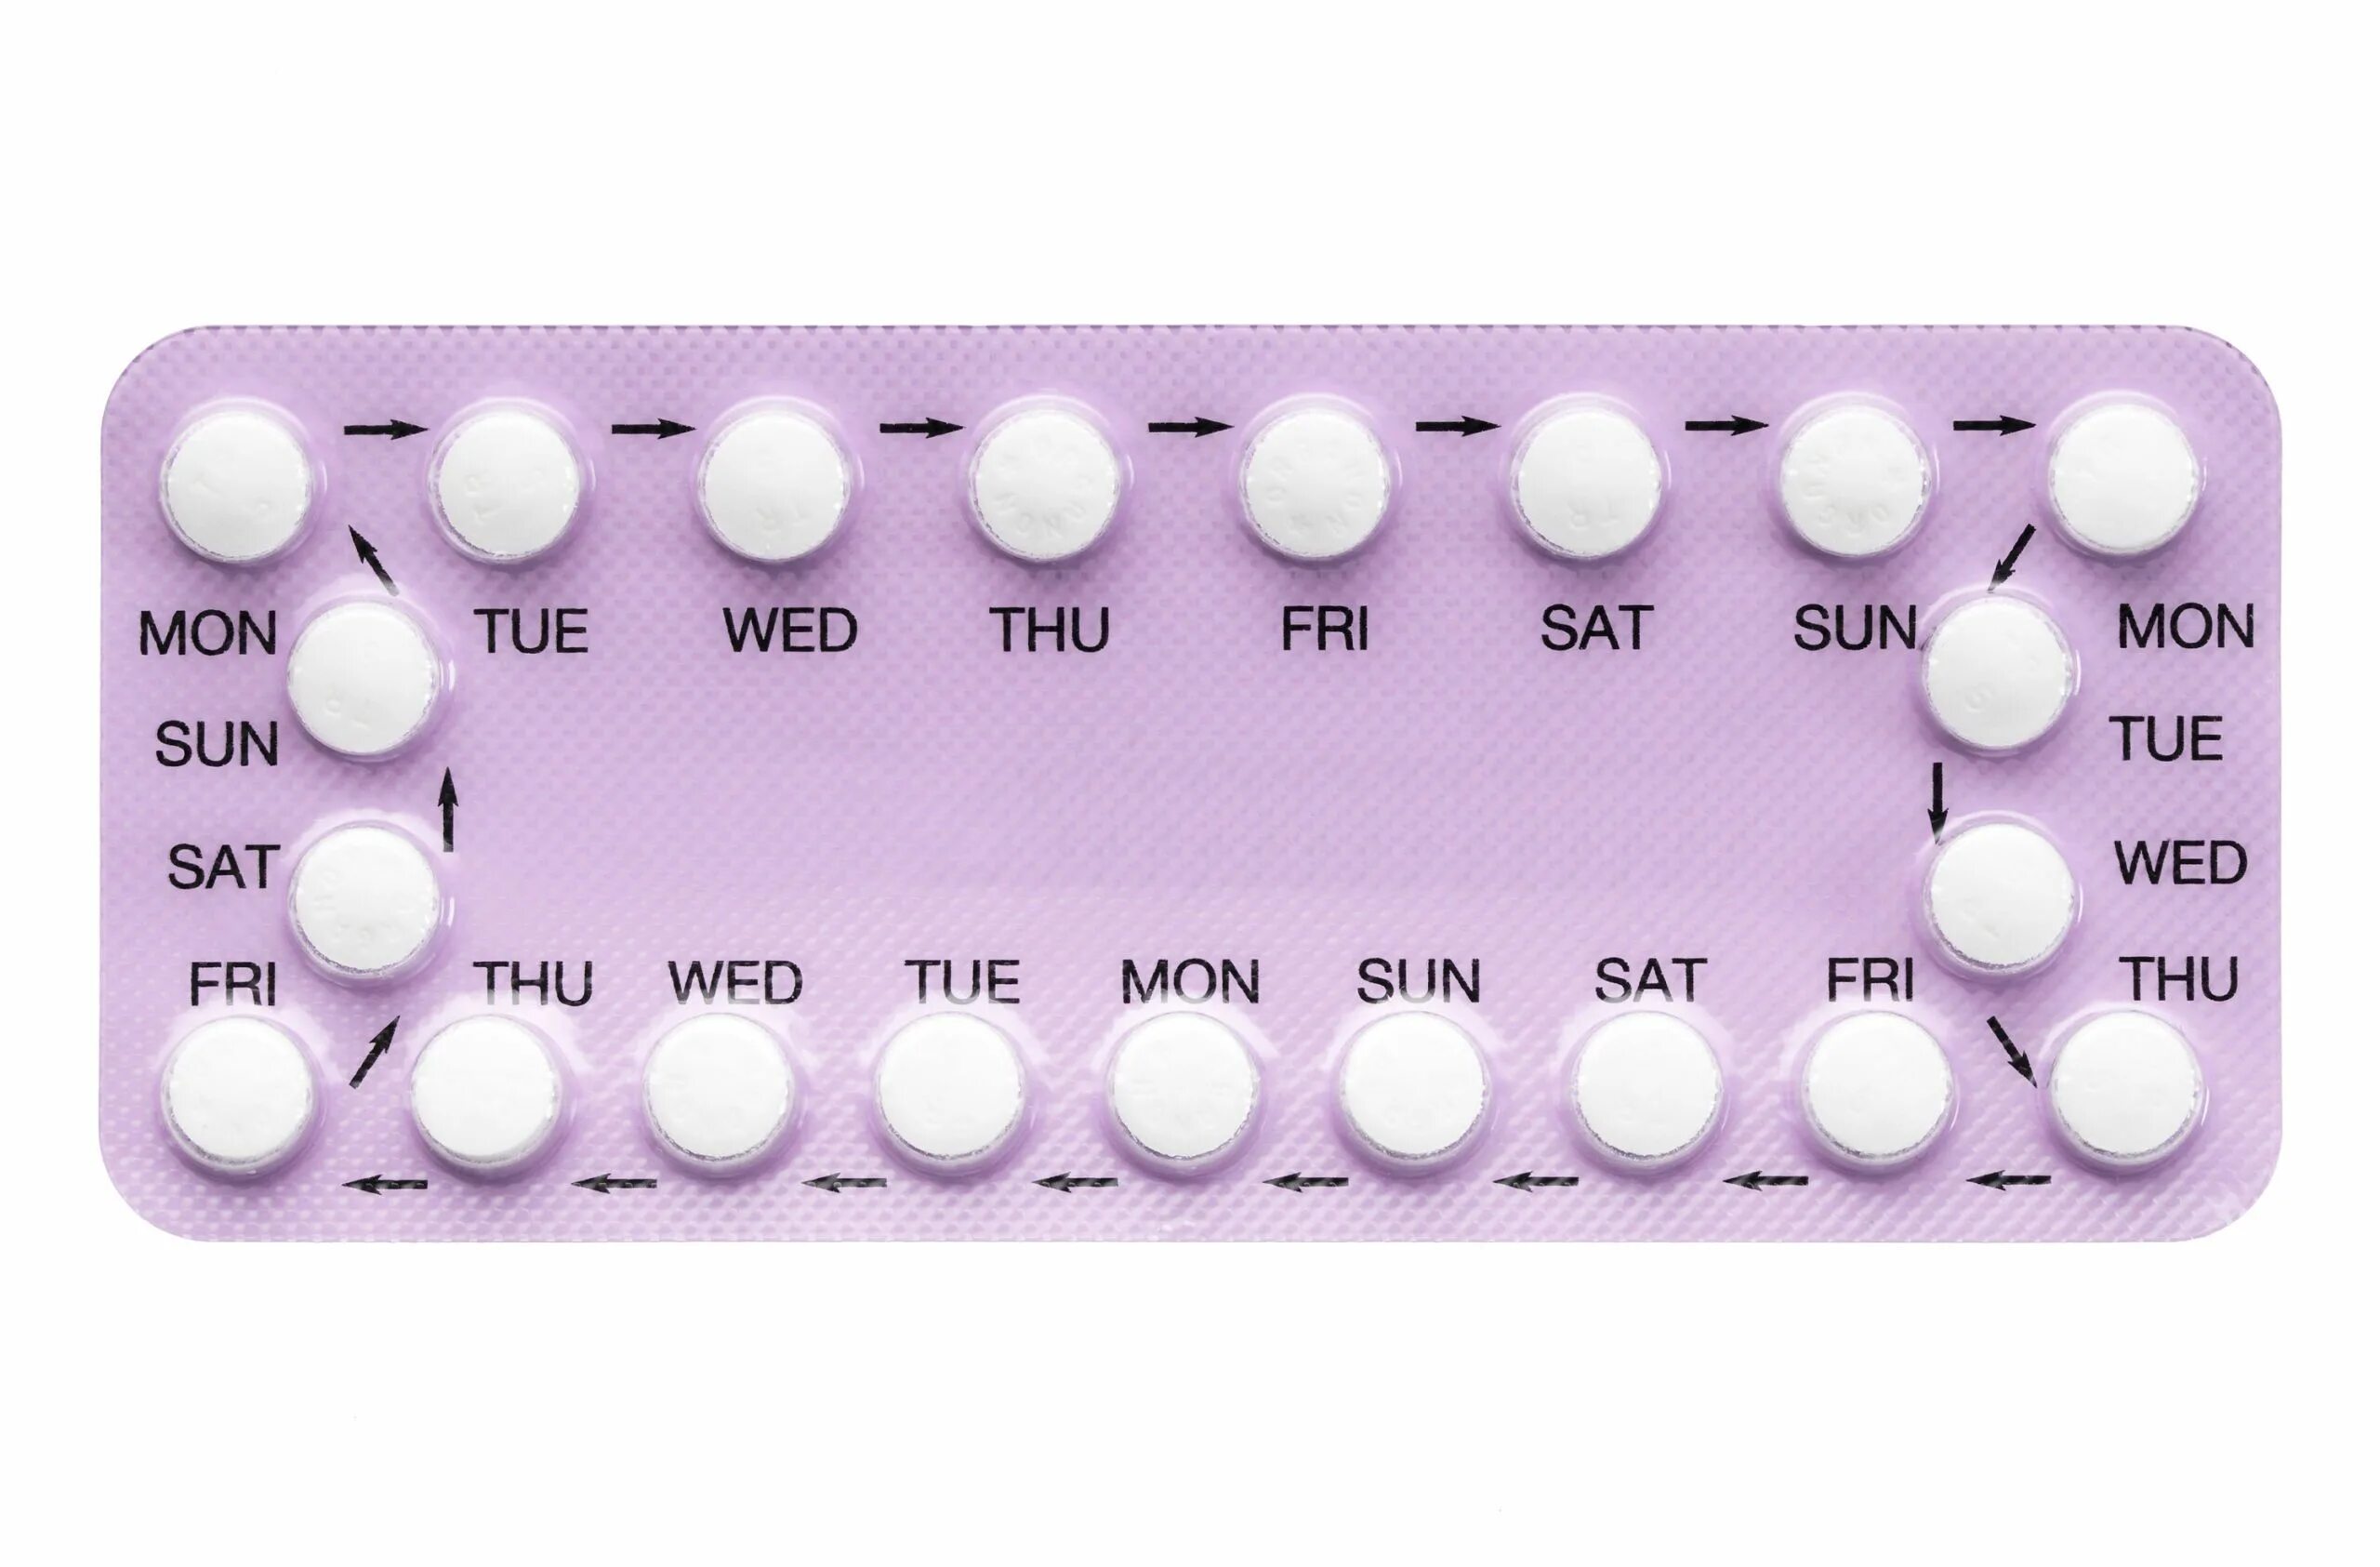 Противозачаточные оральные контрацептивы. Противозачаточные таблетки для женщин. Комбинированные оральные контрацептивы. Комбинированные противозачаточные препараты. Противозачаточные мини пили